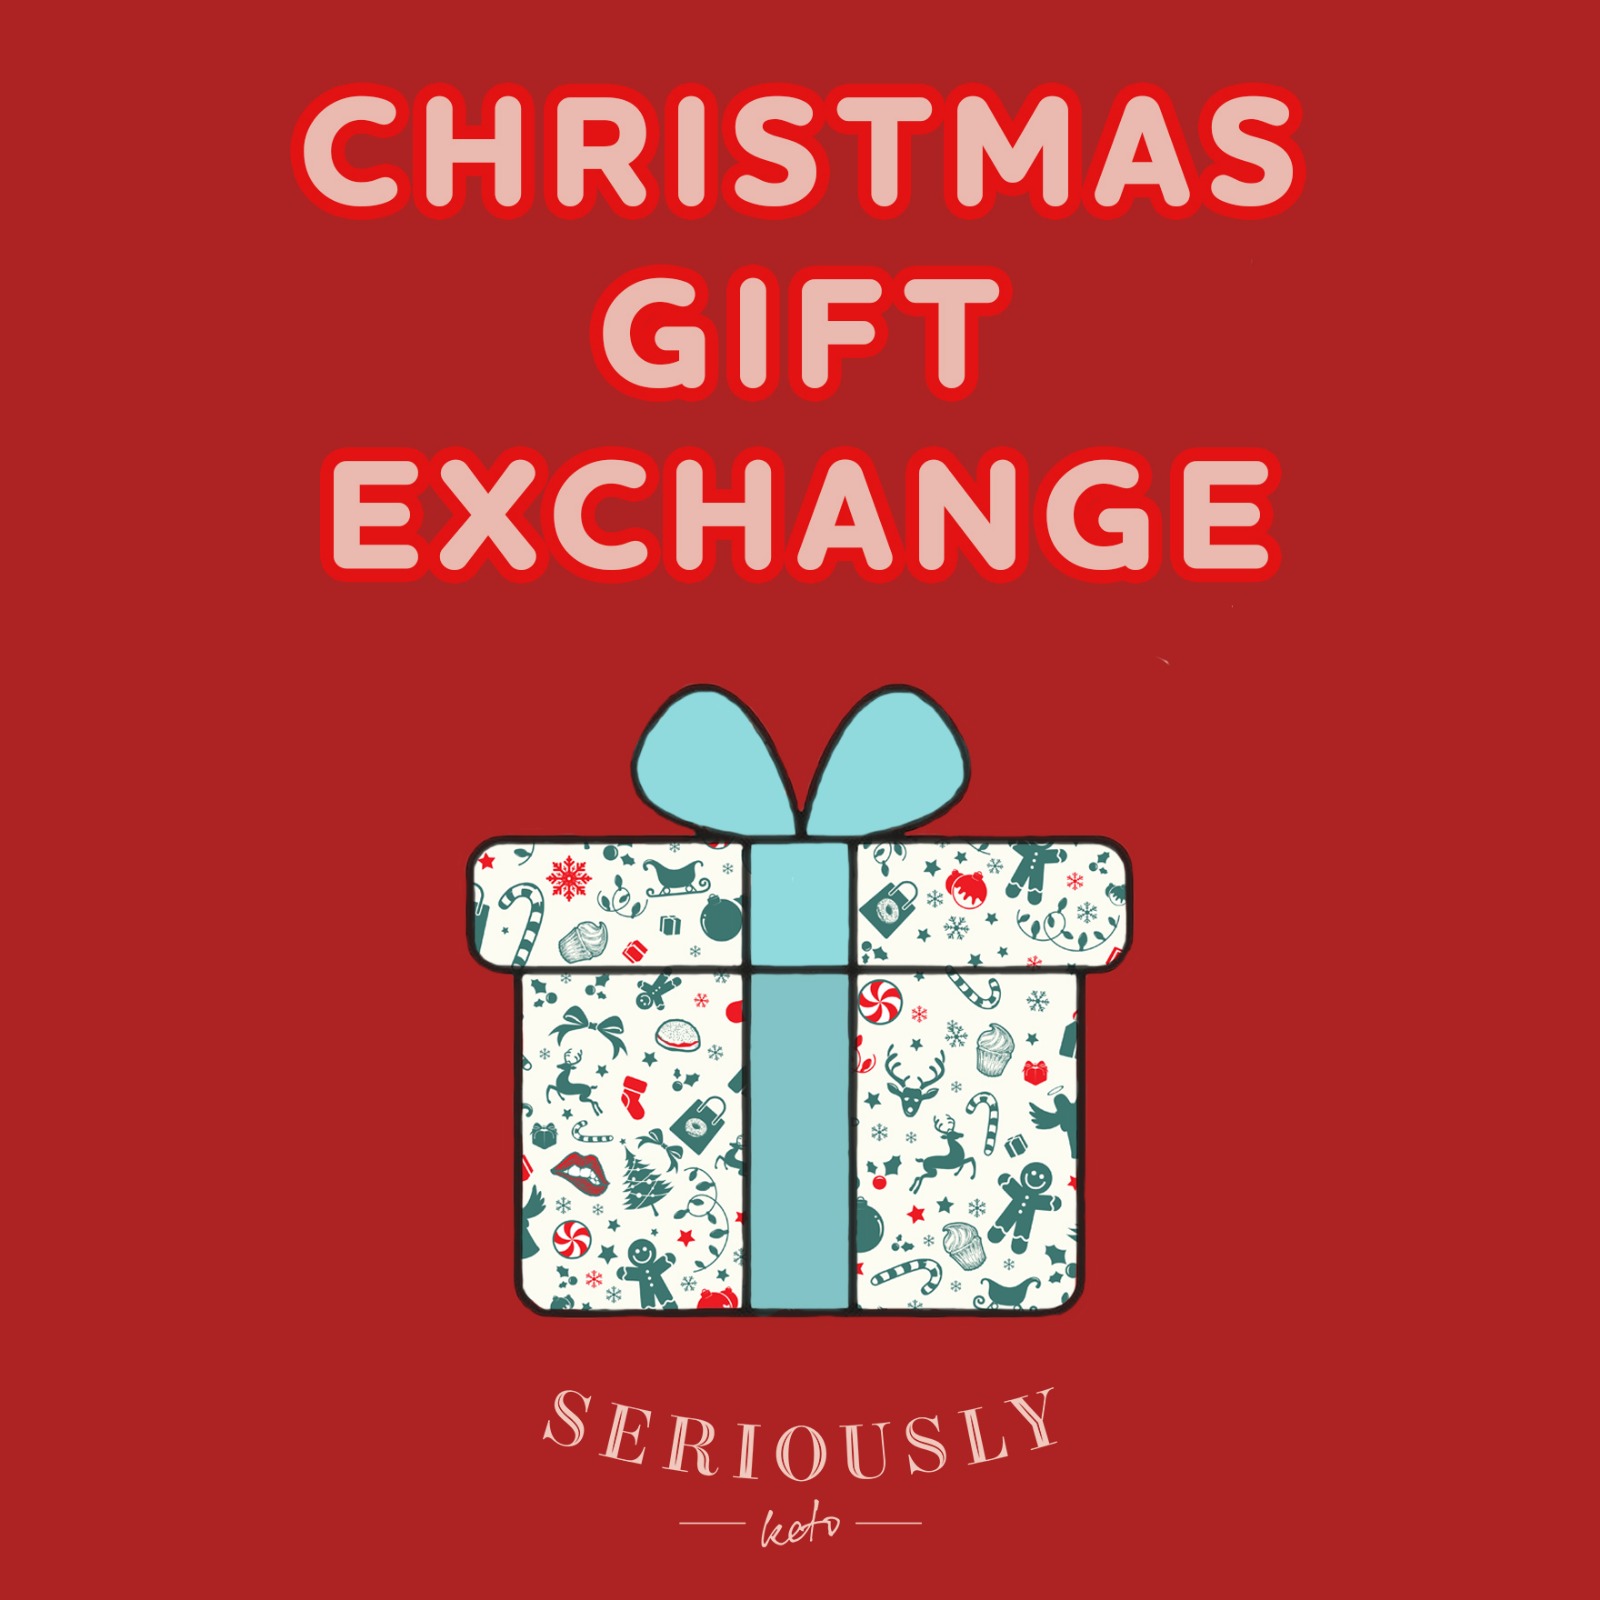 holiday gift exchange regulation